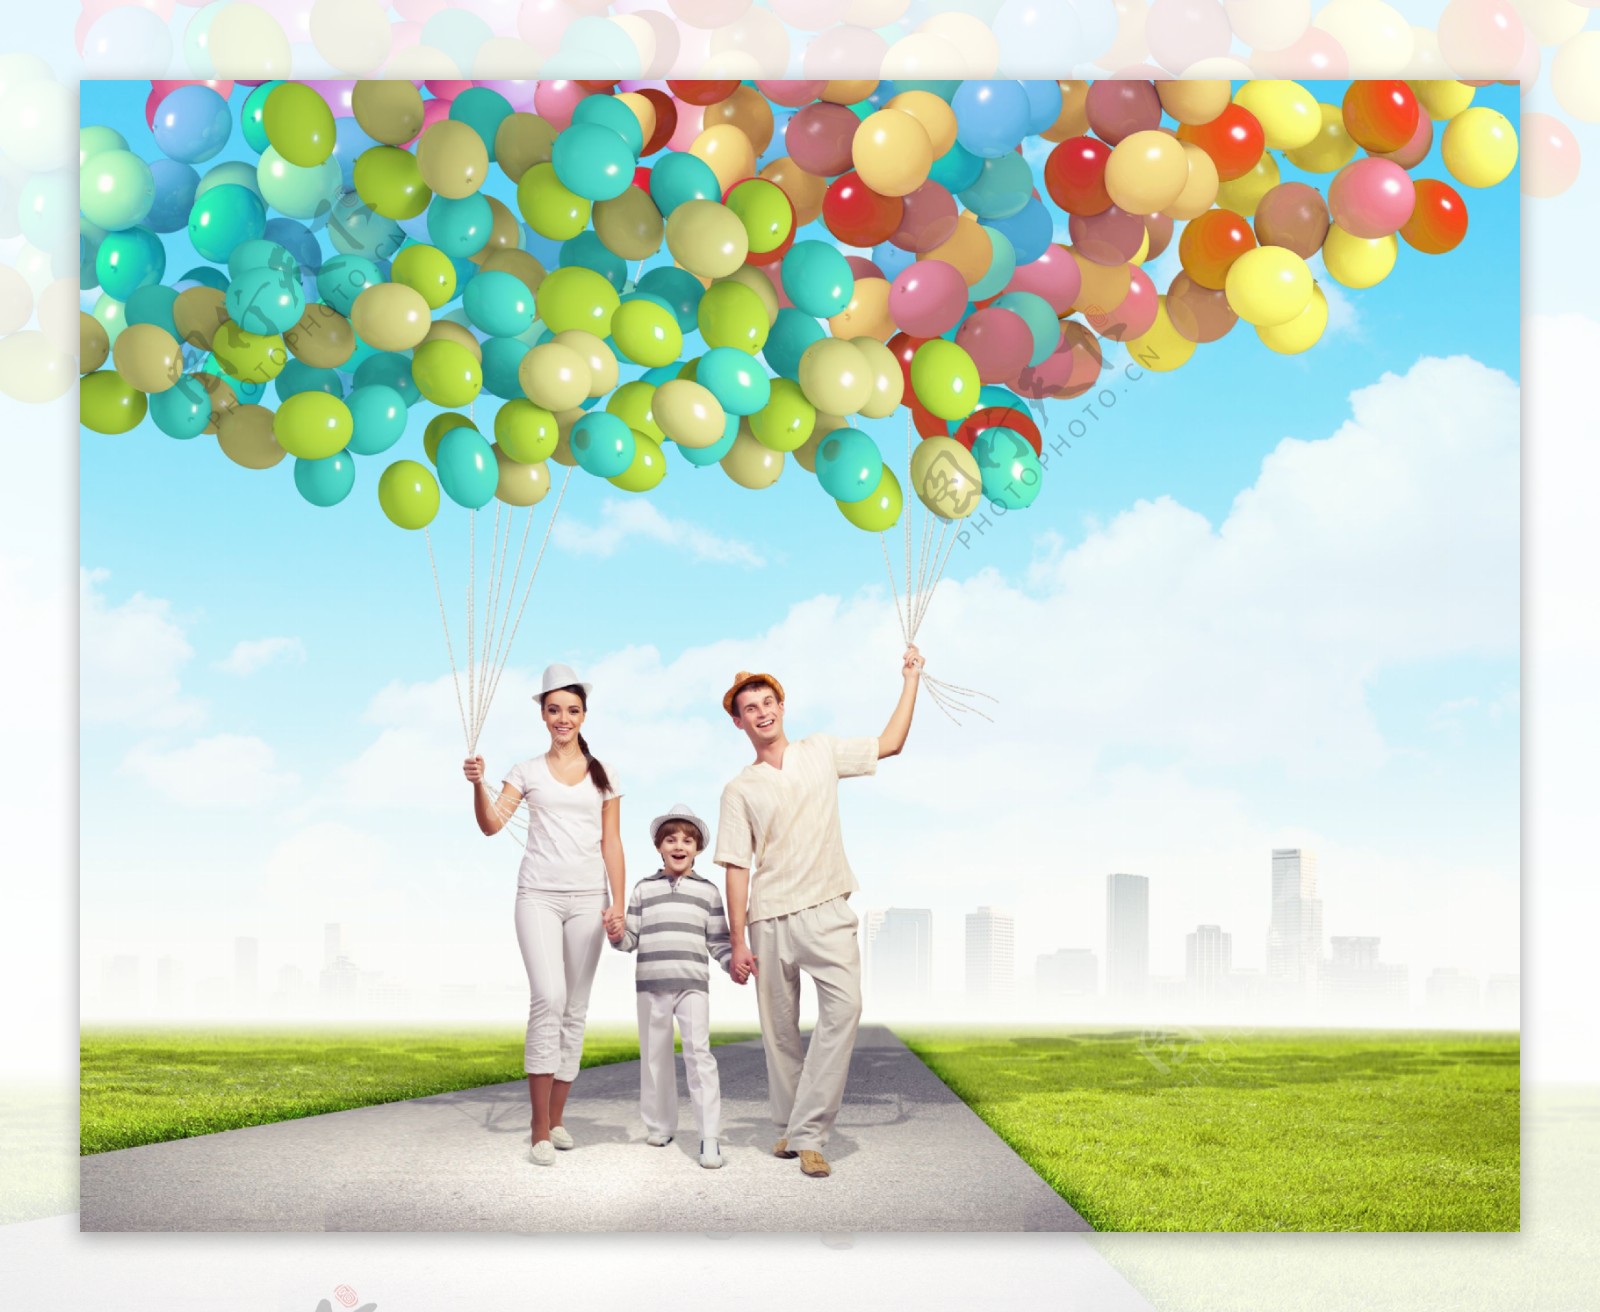 举起彩色气球的家人图片